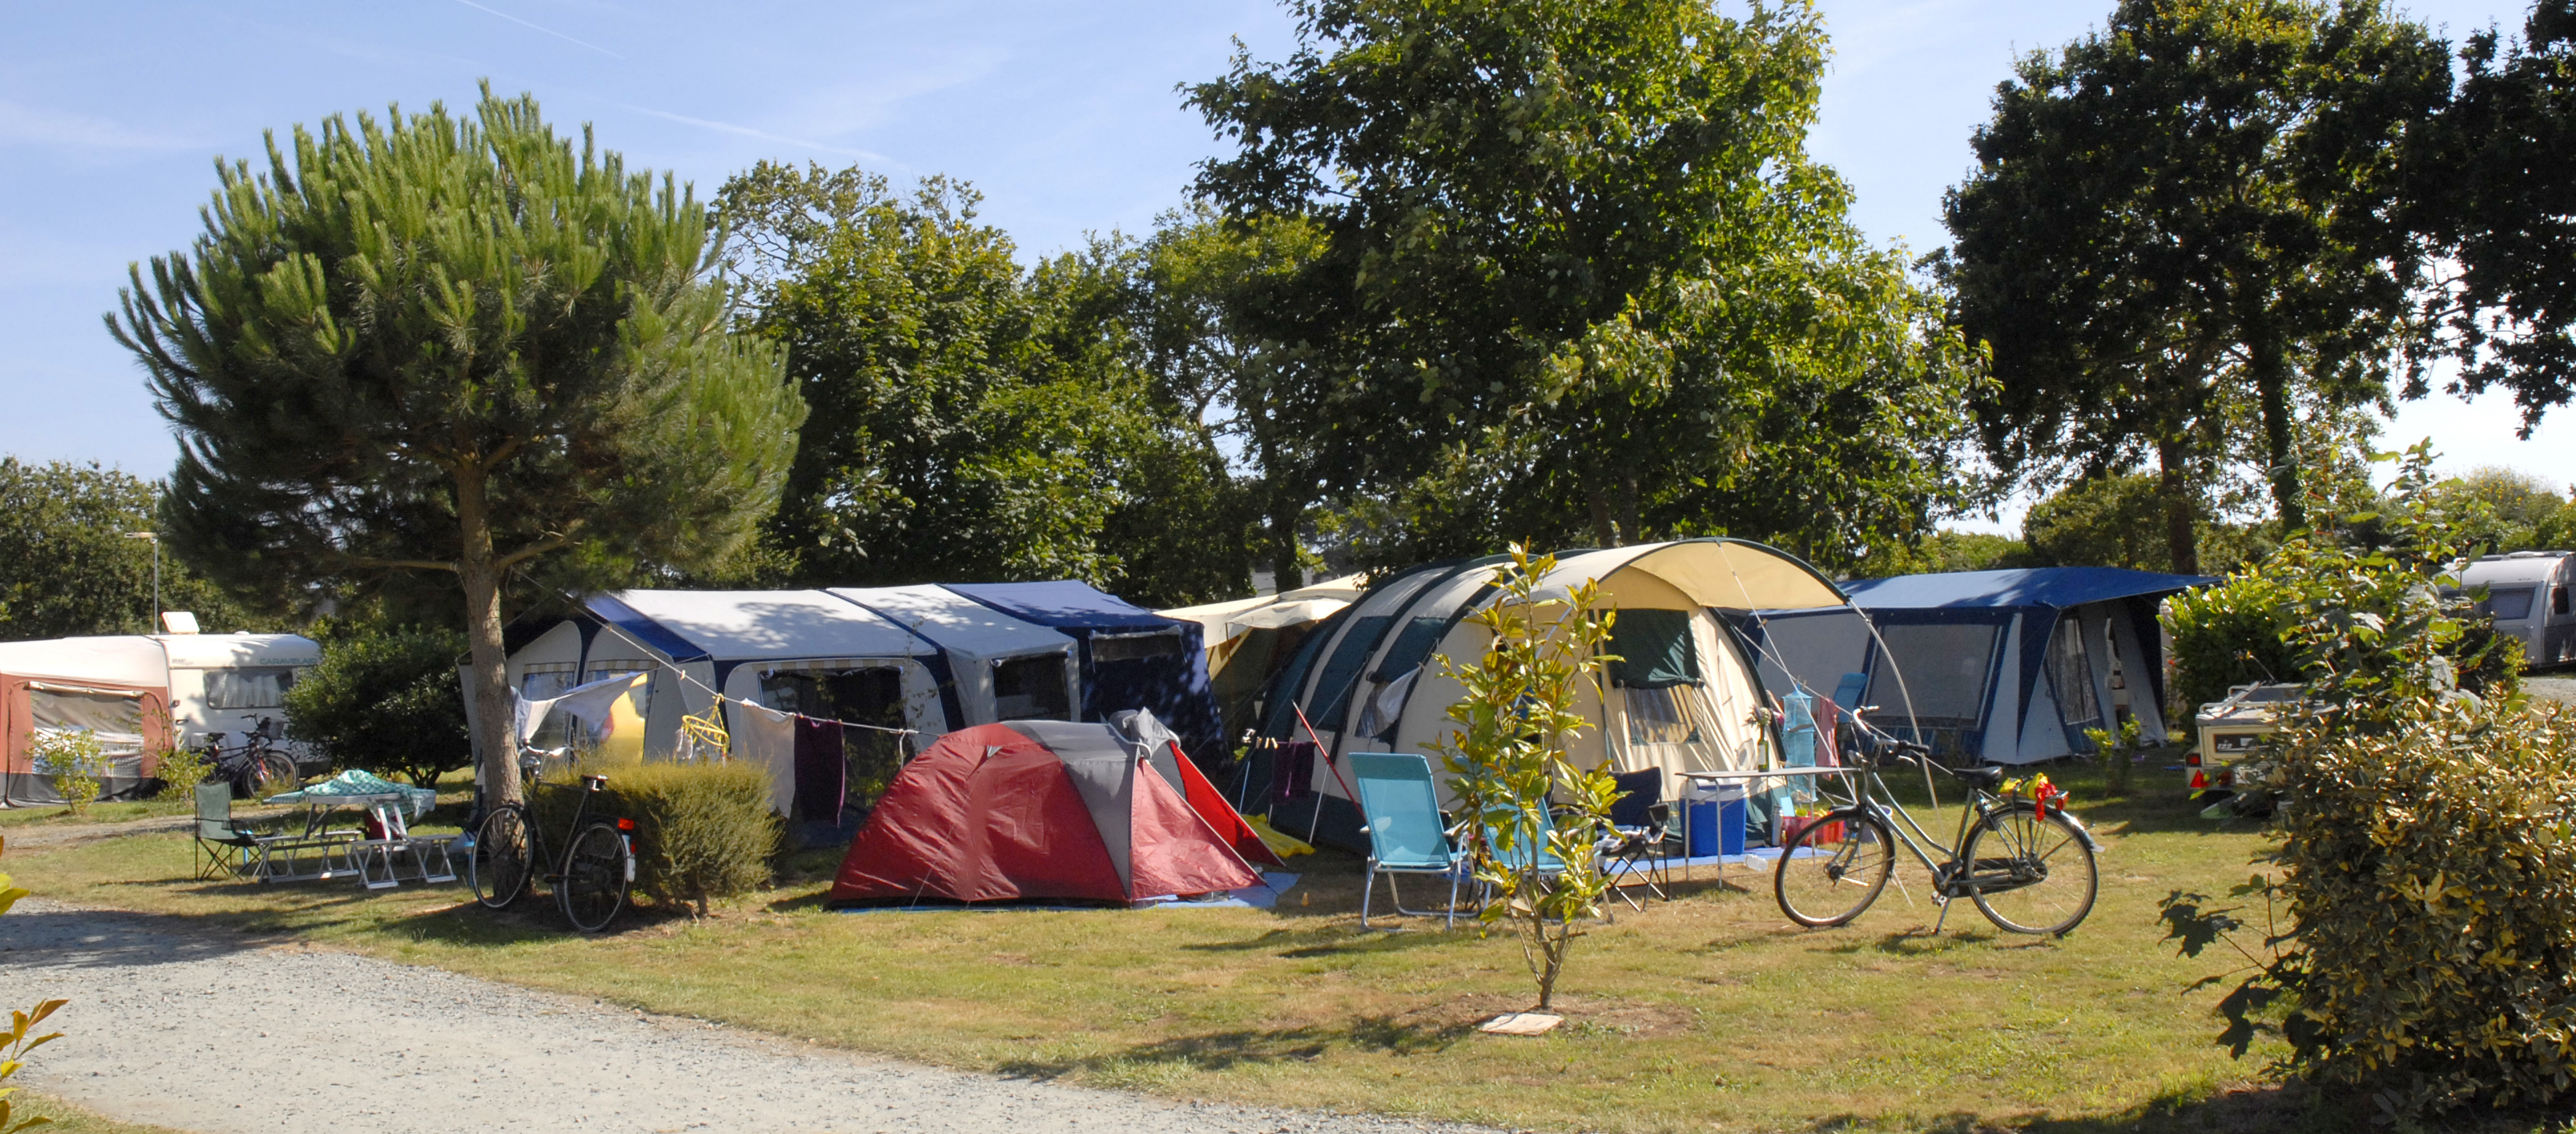 Emplacement pour camping-cars caravanes et tentes - Camping La Plage - Penmarch - Image 03